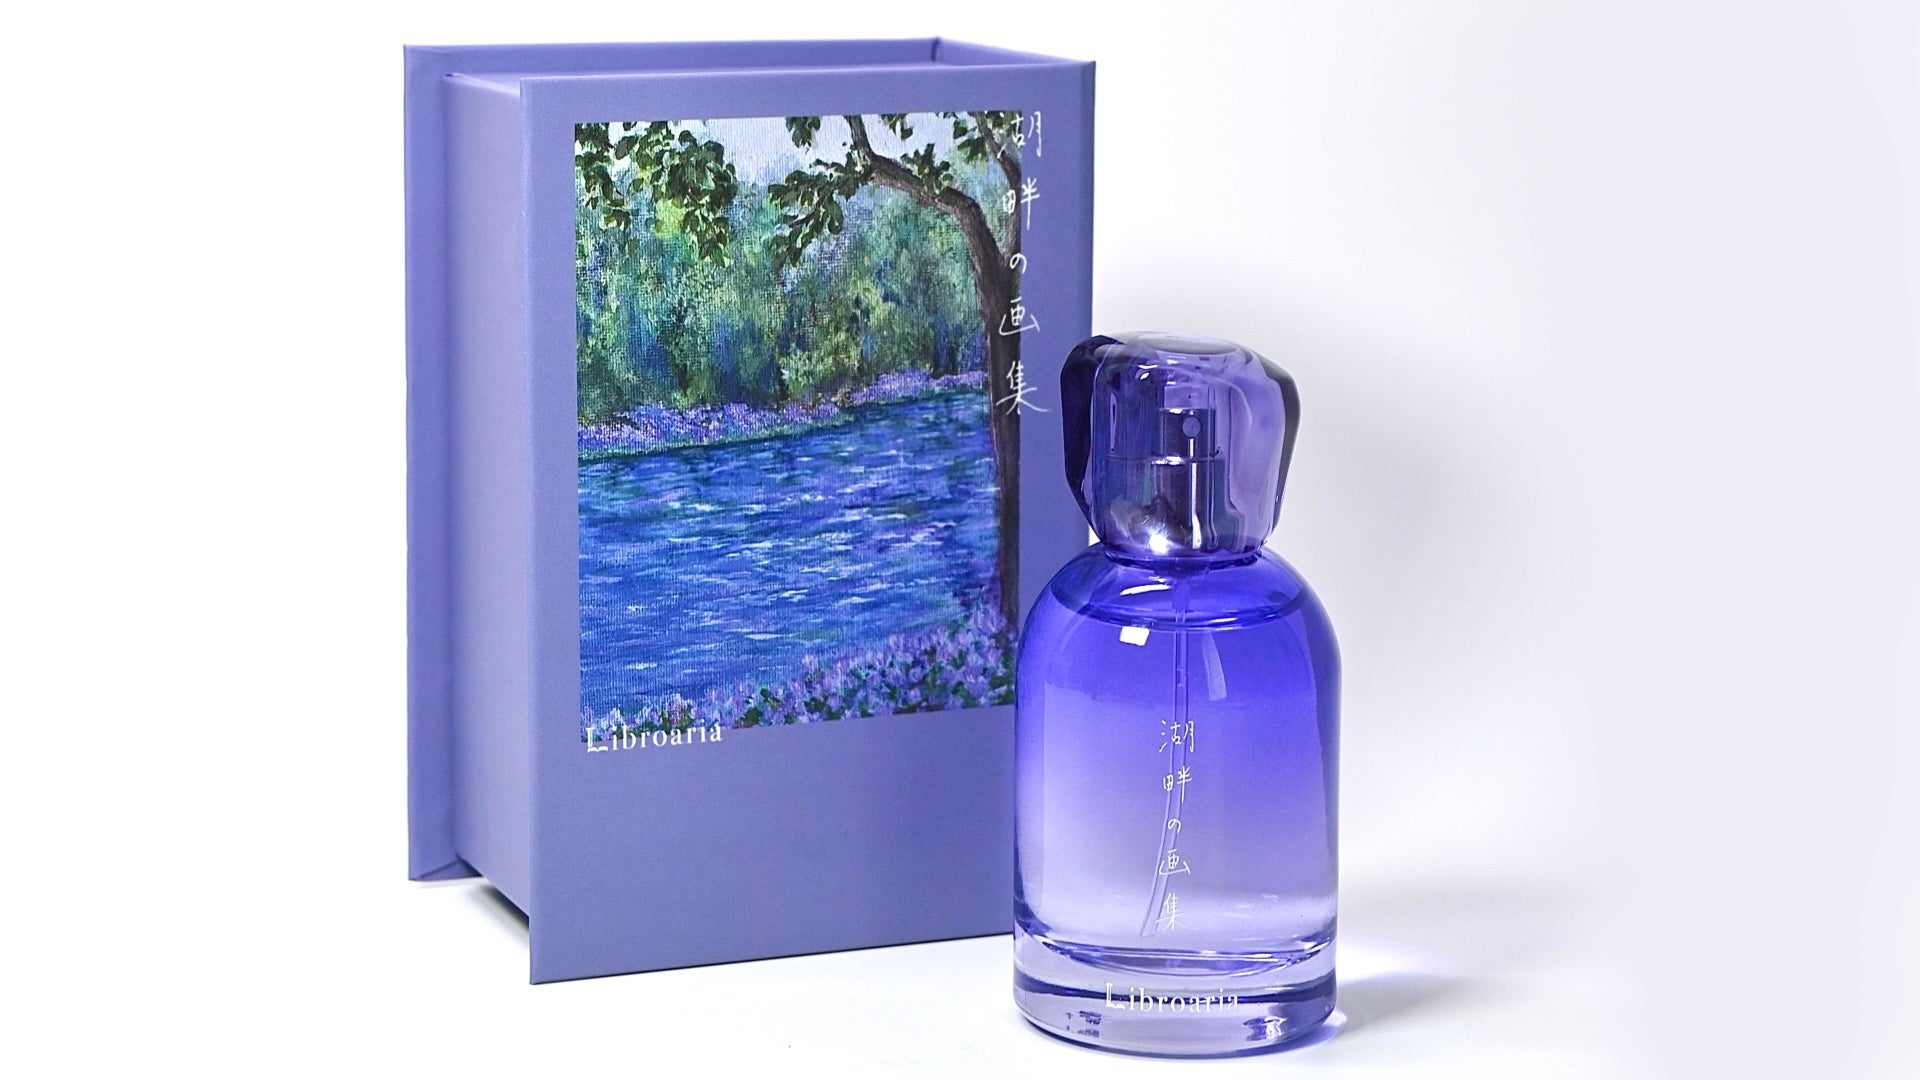 出版社生まれのコスメブランド「Libroaria」(リブロアリア)から、新作の香水が登場。森の中にある、小さな湖のほとりでのひとときをイメージしたみずみずしい香り。